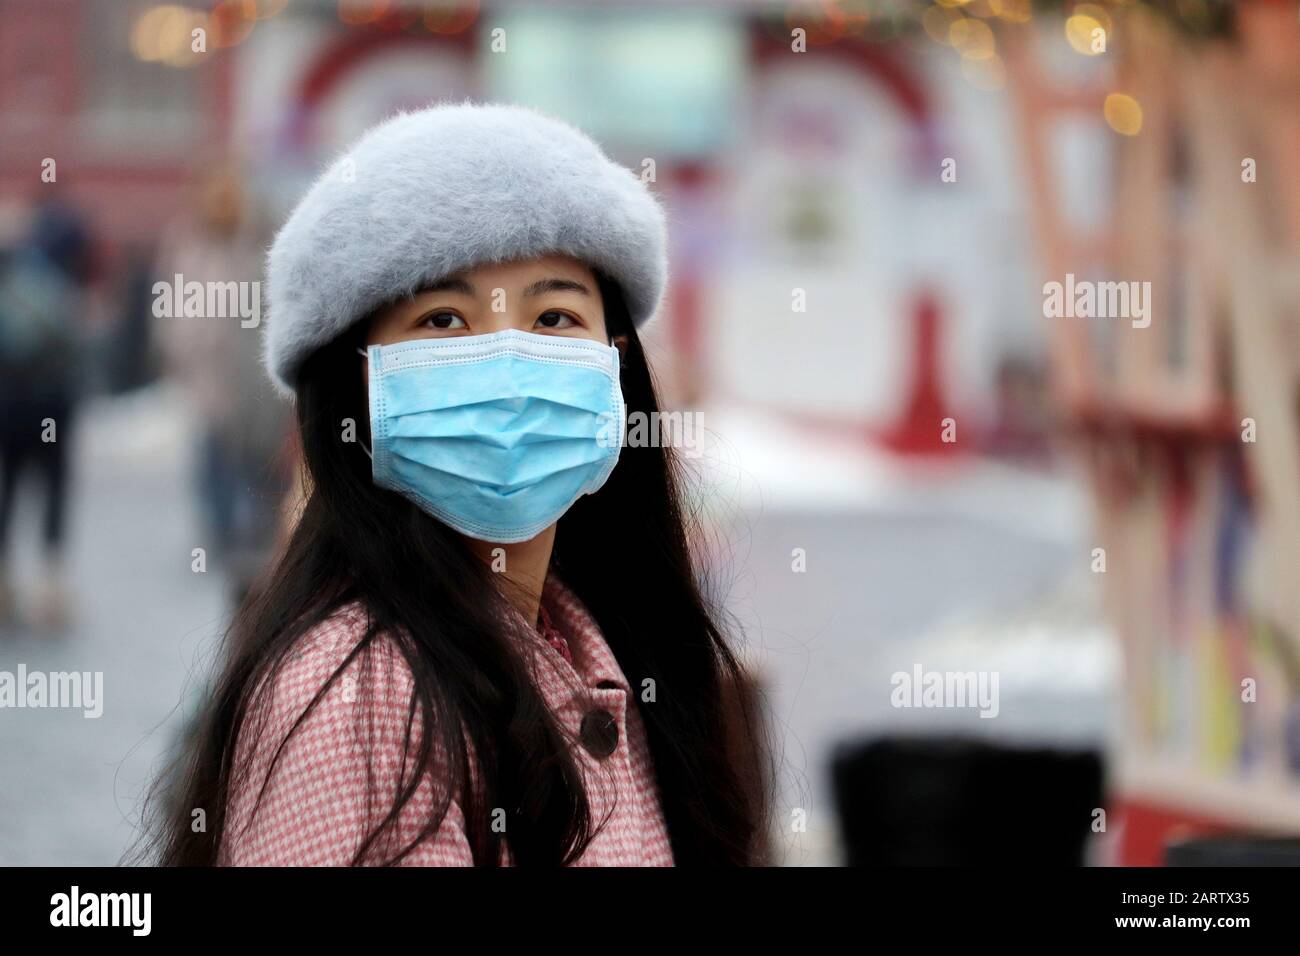 Coronavirus Protection, chinesisches Mädchen in medizinischer Schutzmaske, das auf einer Winterstadt-Straße in Menschenmenge steht Stockfoto